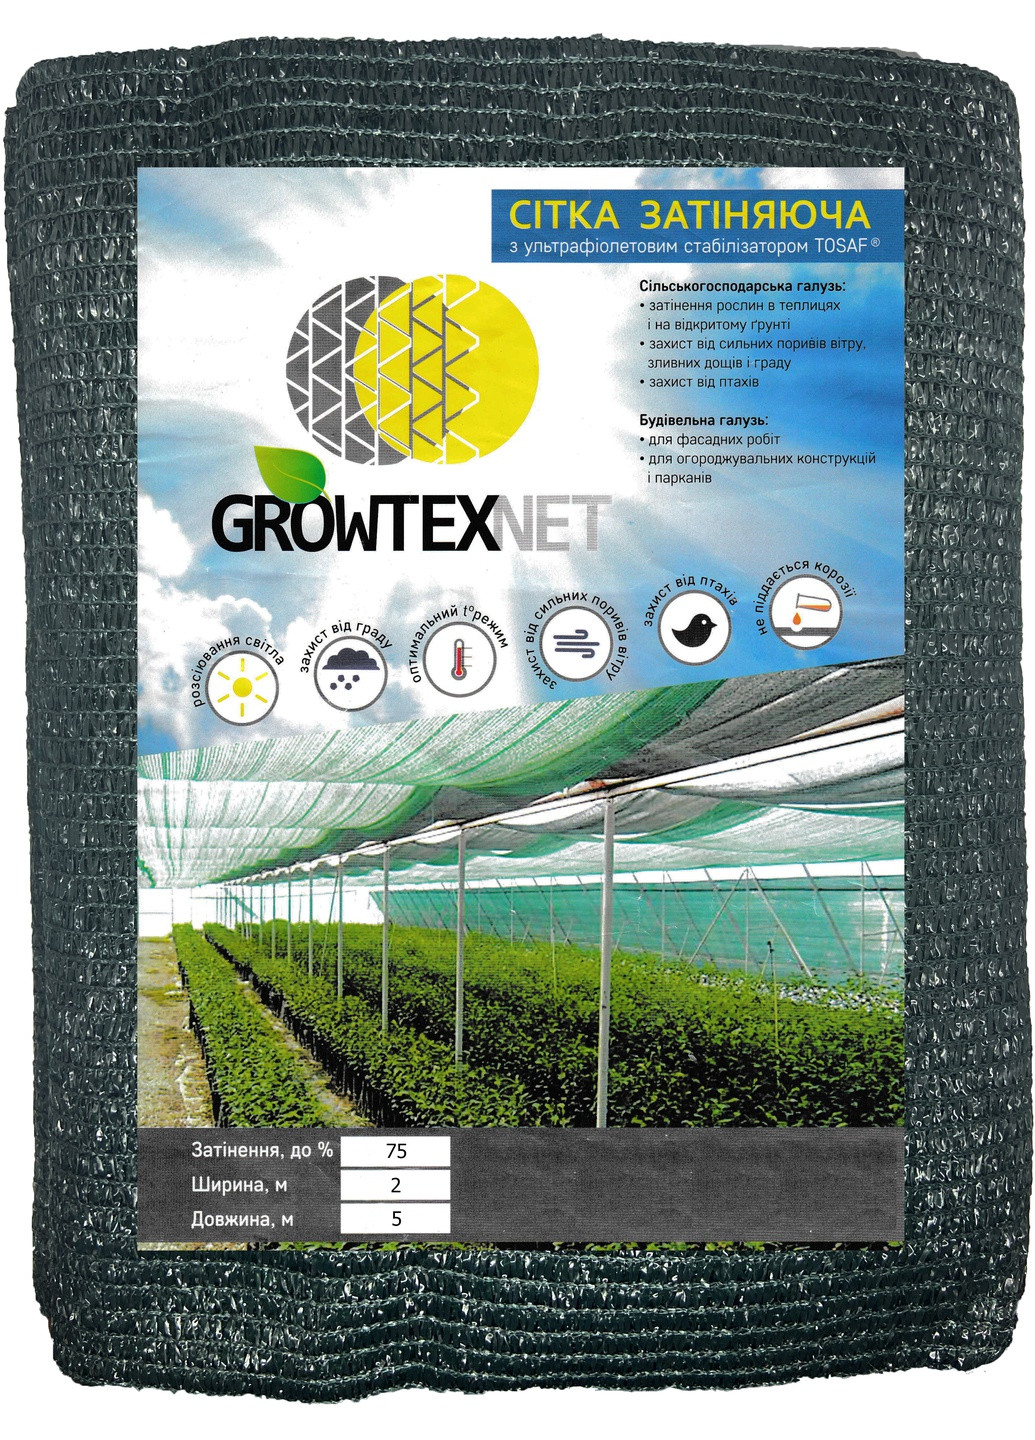 Сітка затіняюча Growtex Net з ультрафіолетовим стабілізатором 70% (60 гр/м2) розмір 2х5 м Одетекс (258457572)